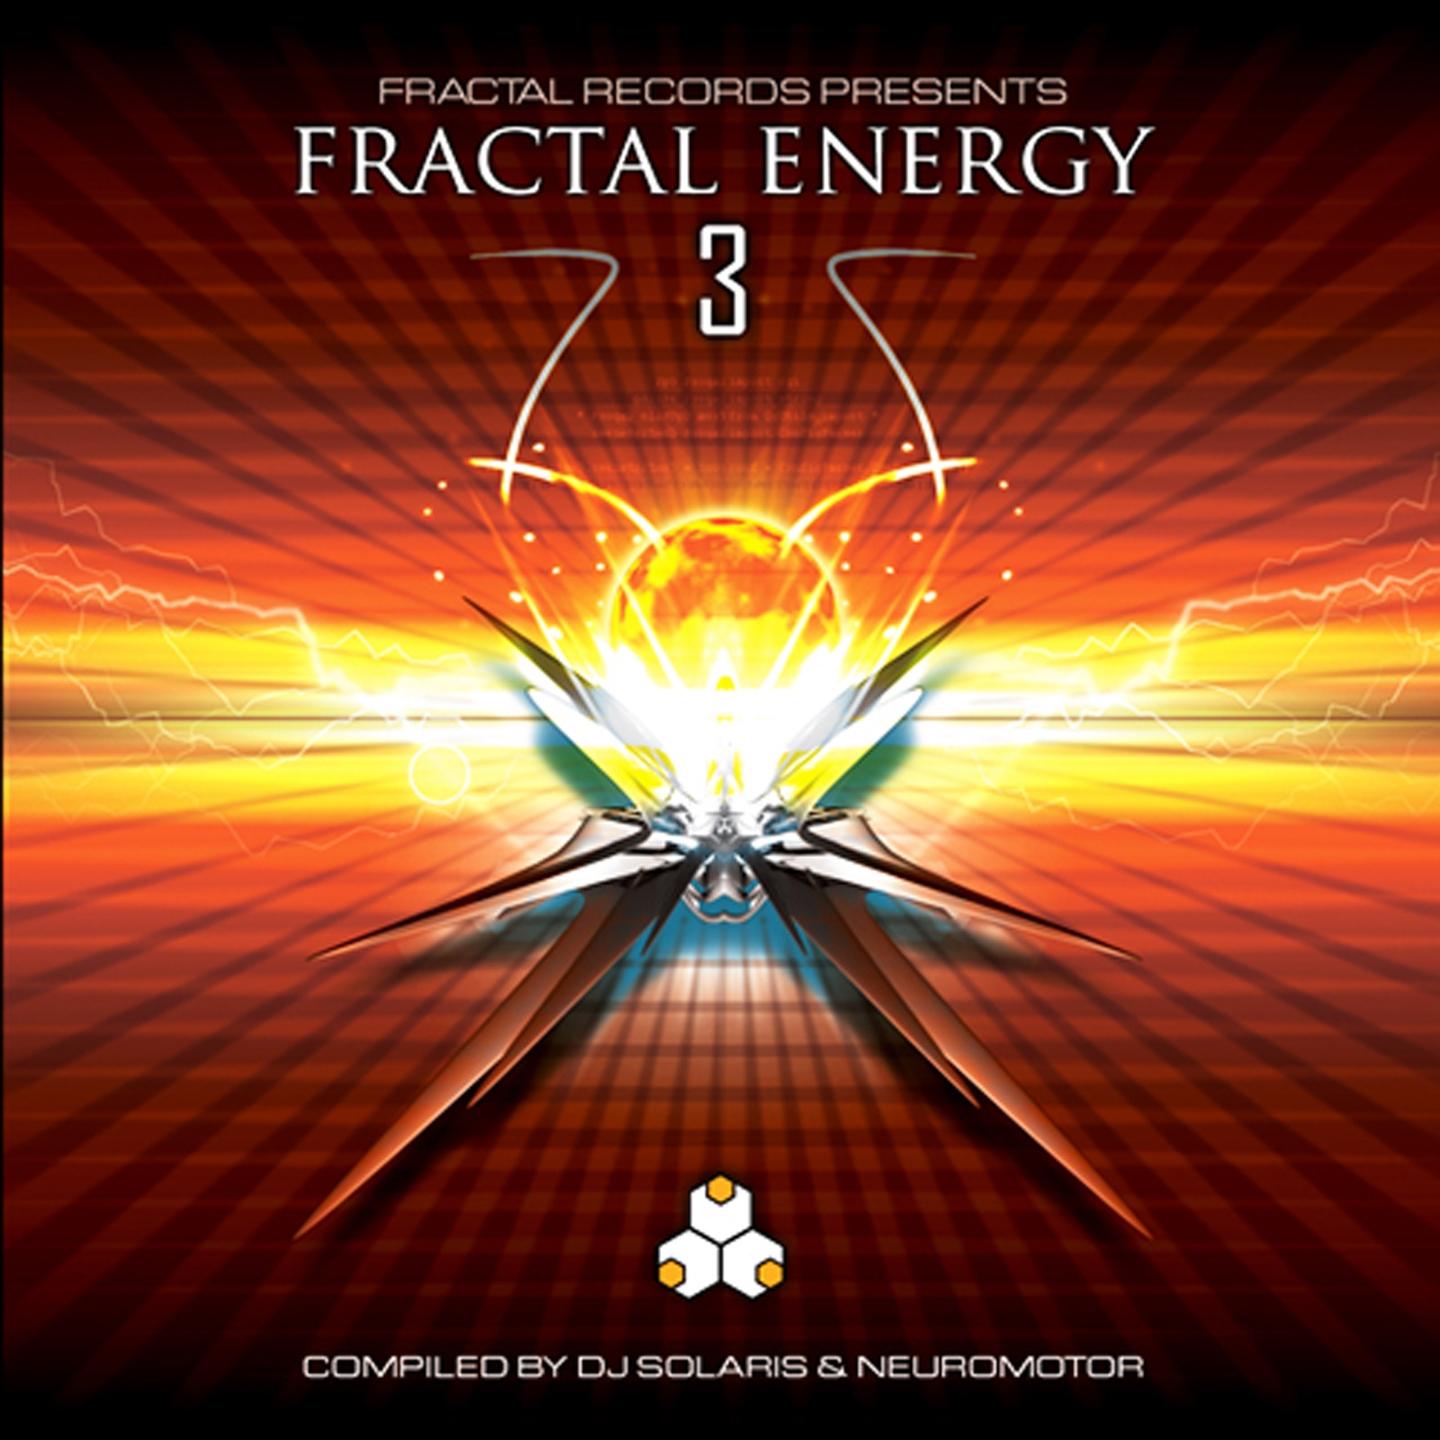 Fractal energy 3